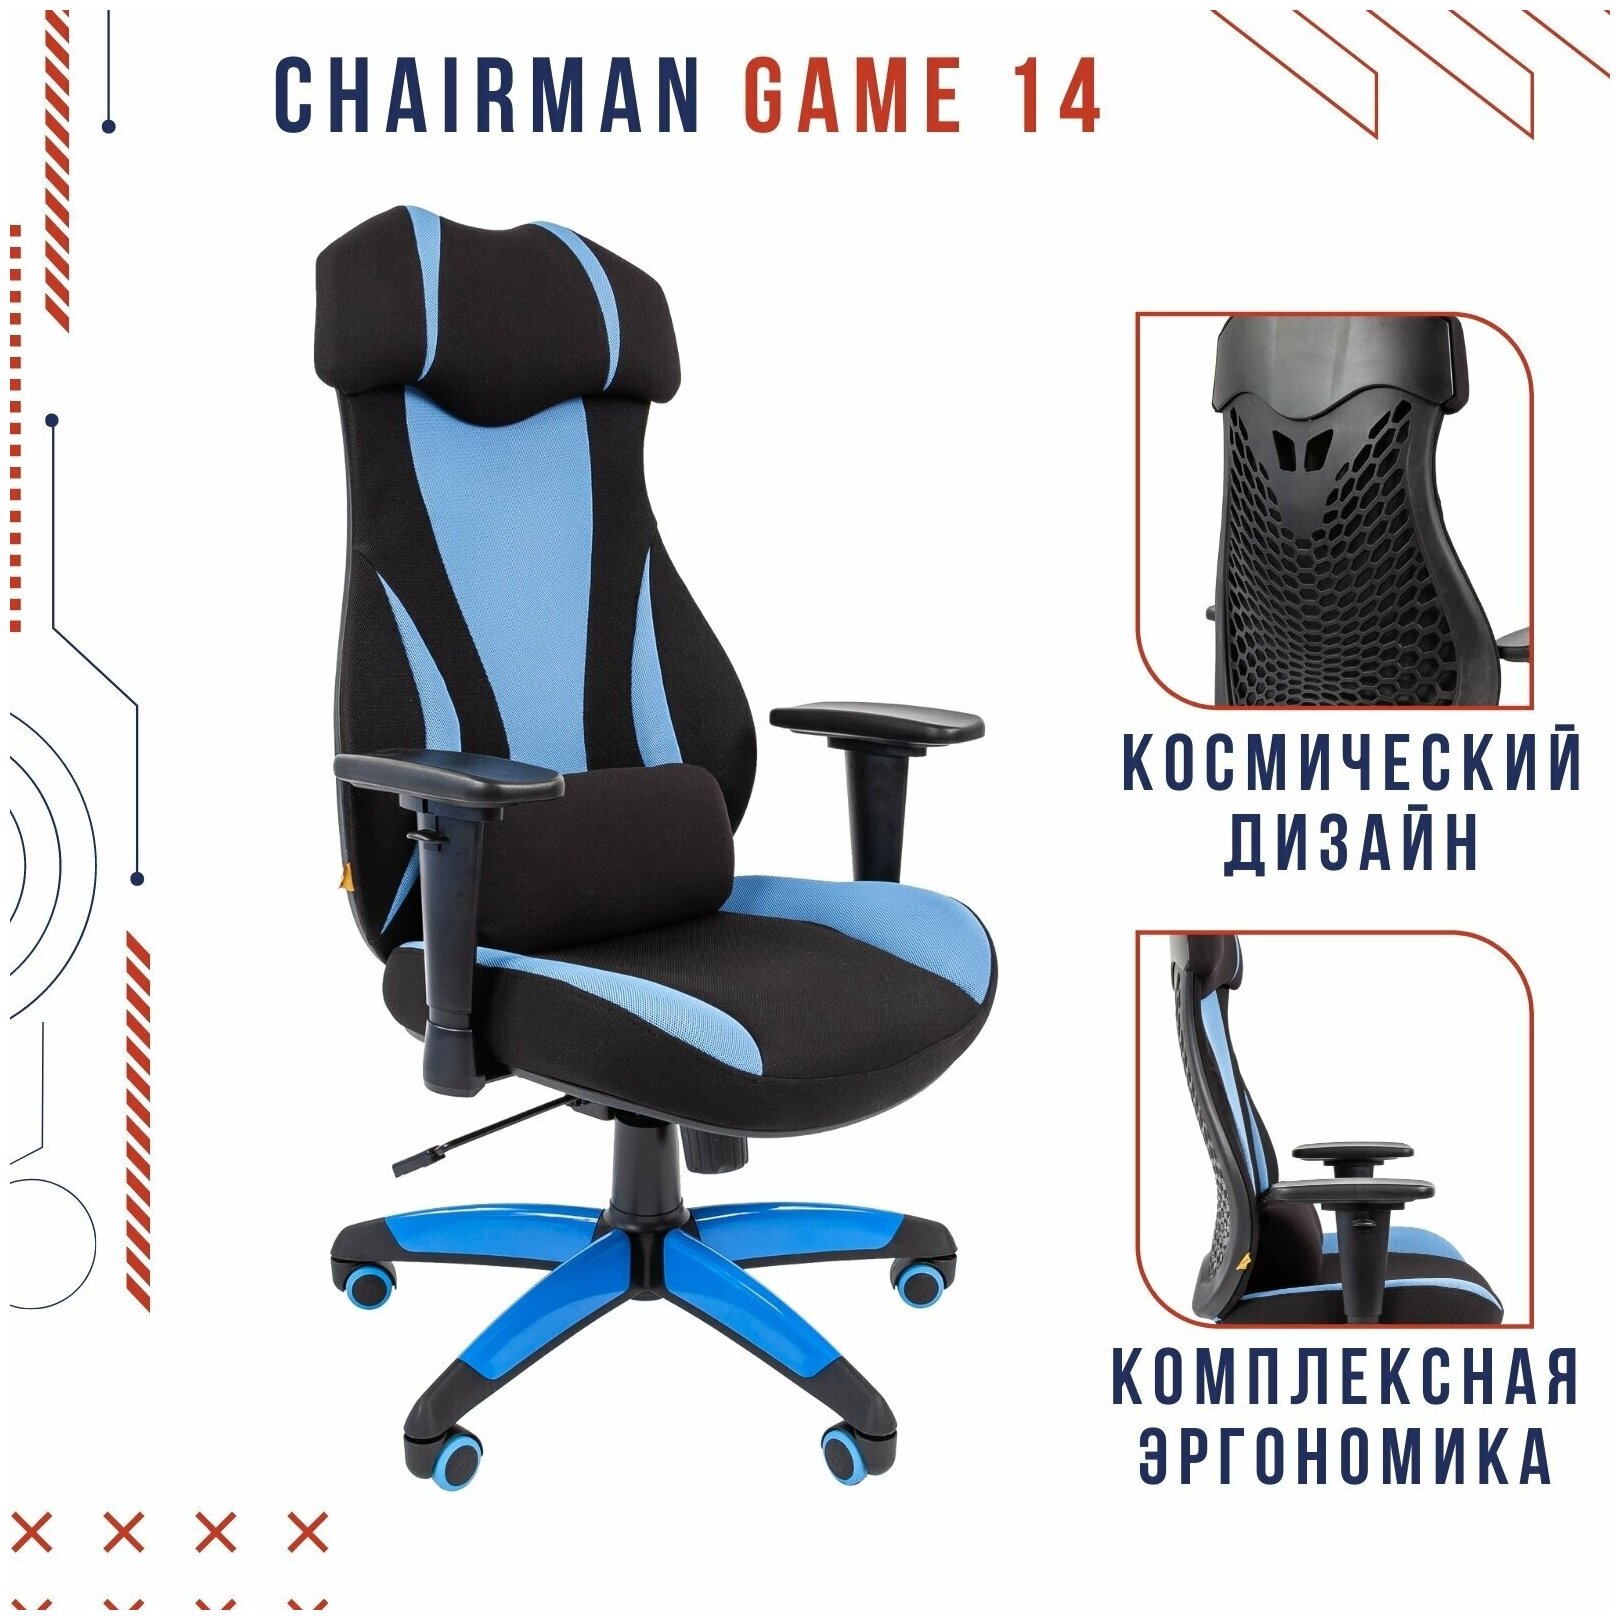 Игровое кресло Chairman game 14 чёрное/голубое (ткань, пластик, газпатрон 3 кл, ролики, механизм качания) - фотография № 1